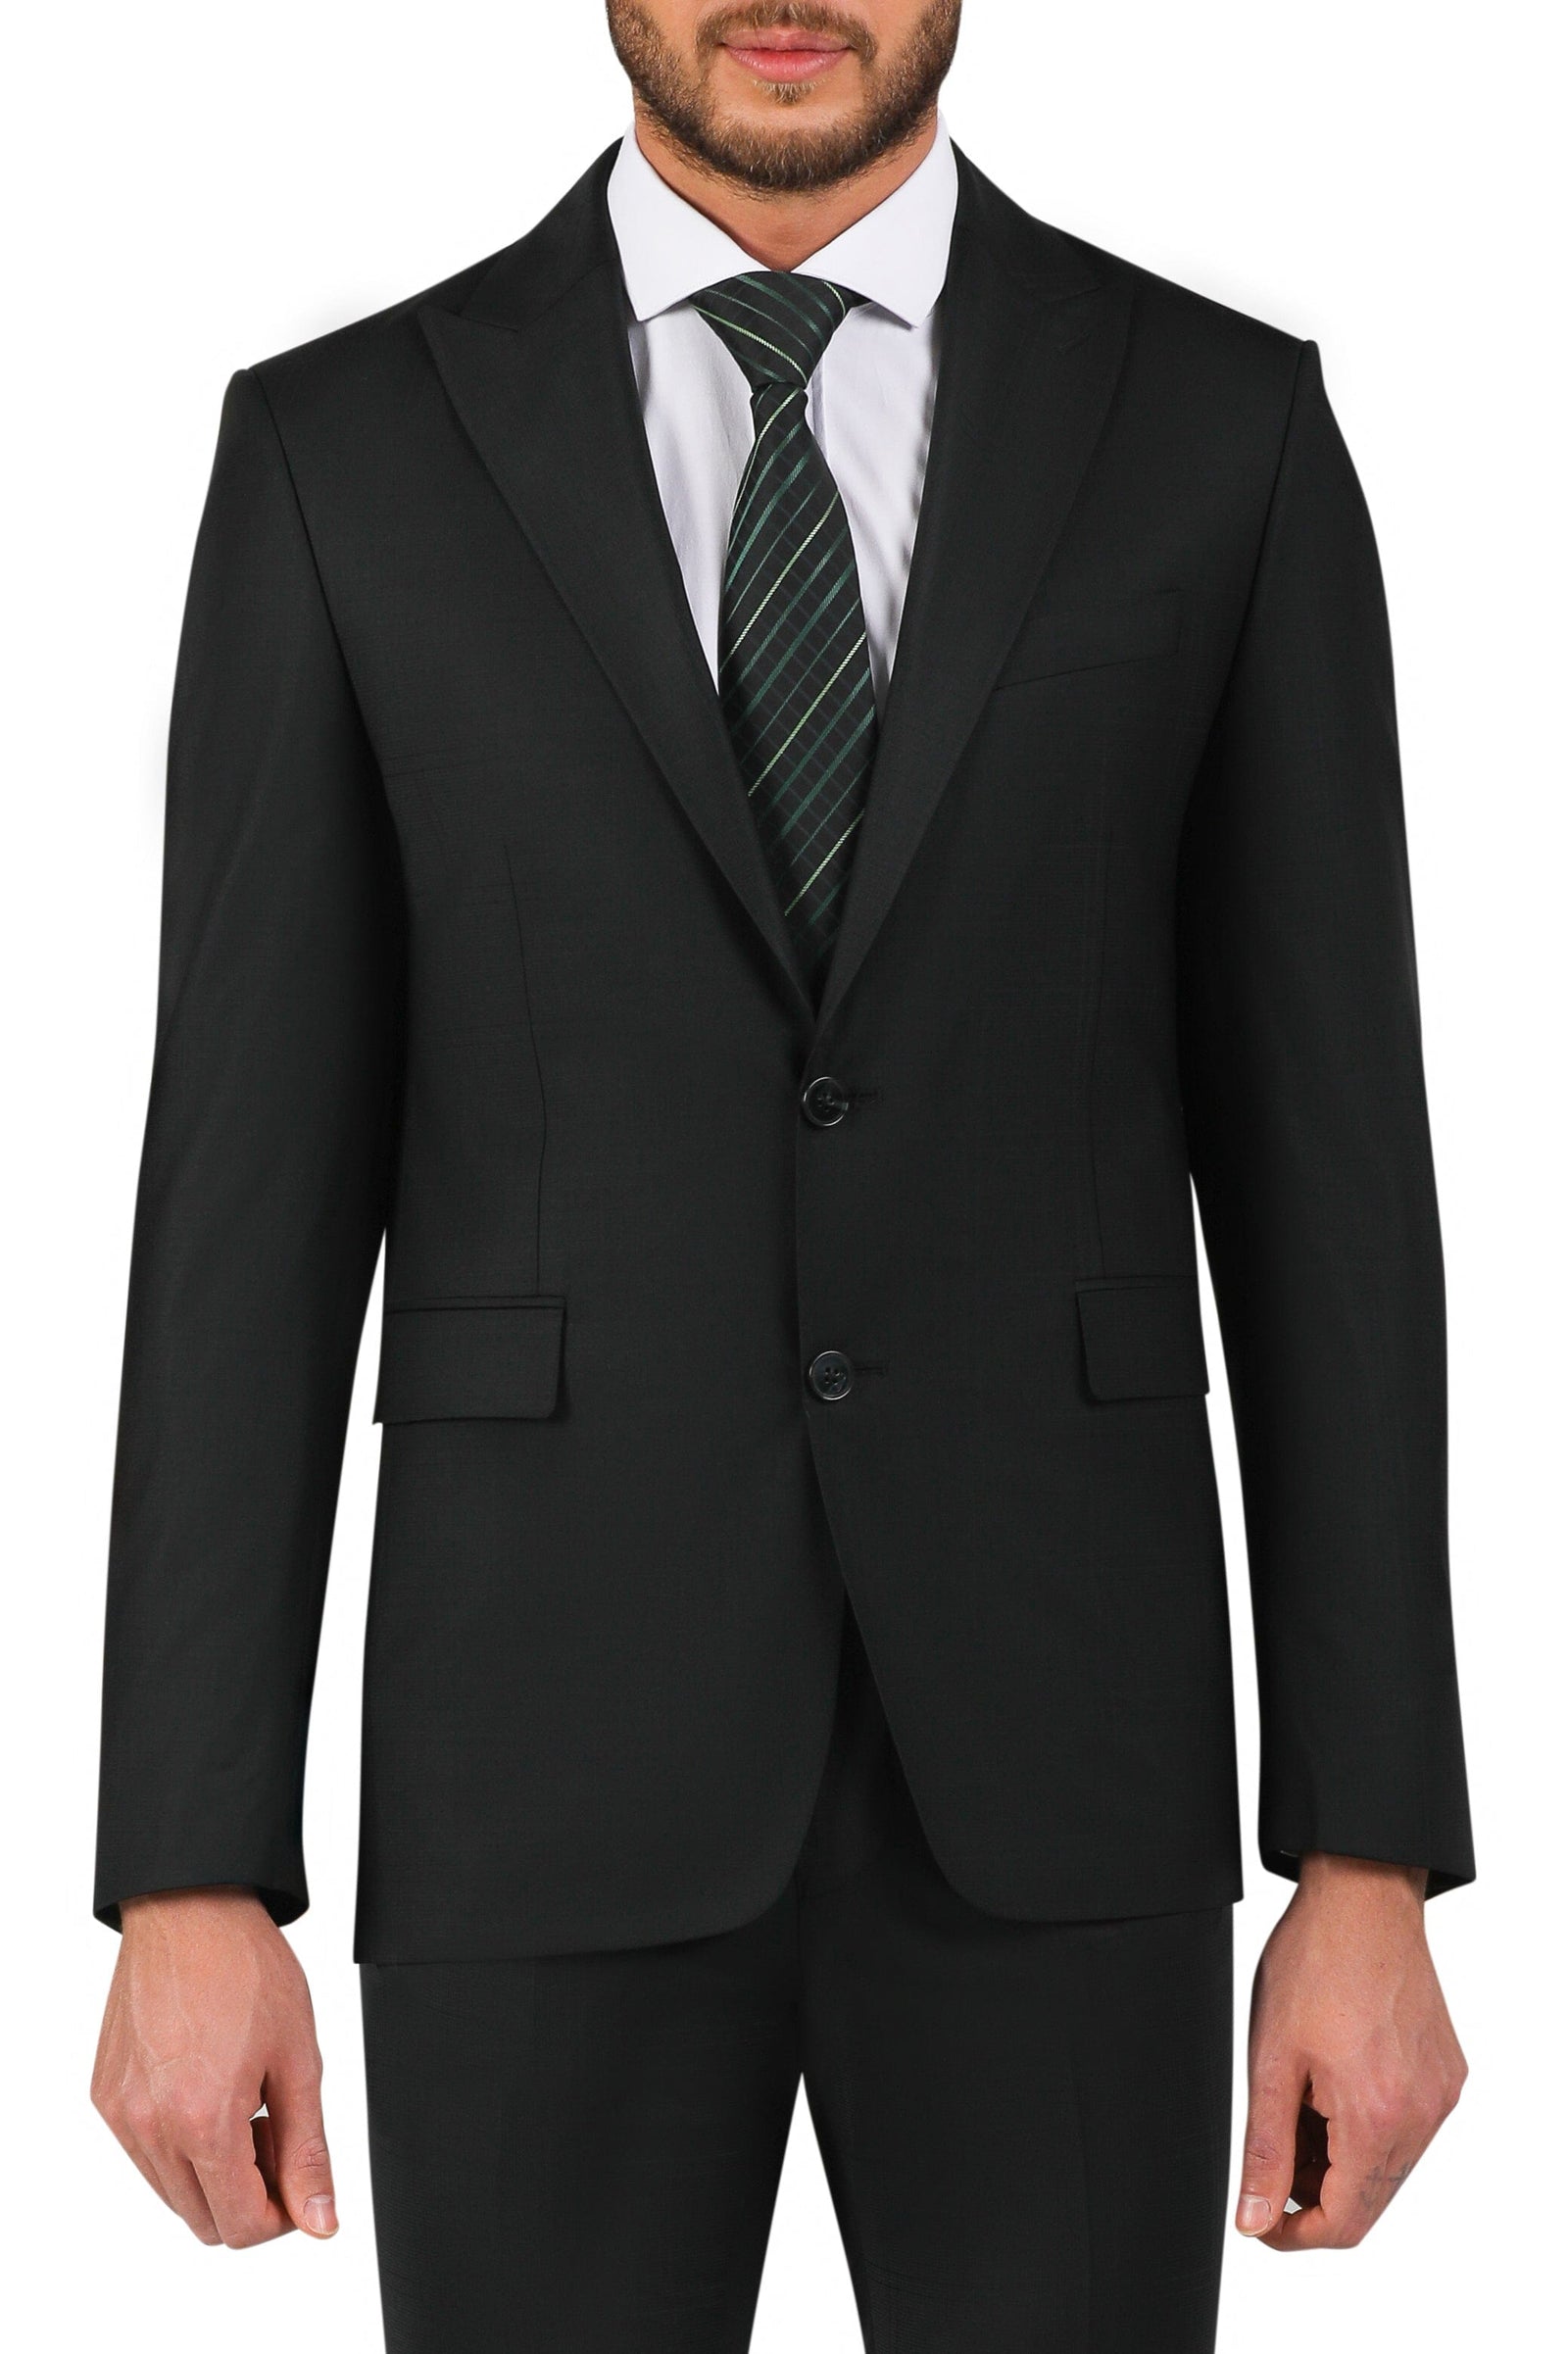 Black suit/silver tie | Black suit black shirt, All black suit, Black suits